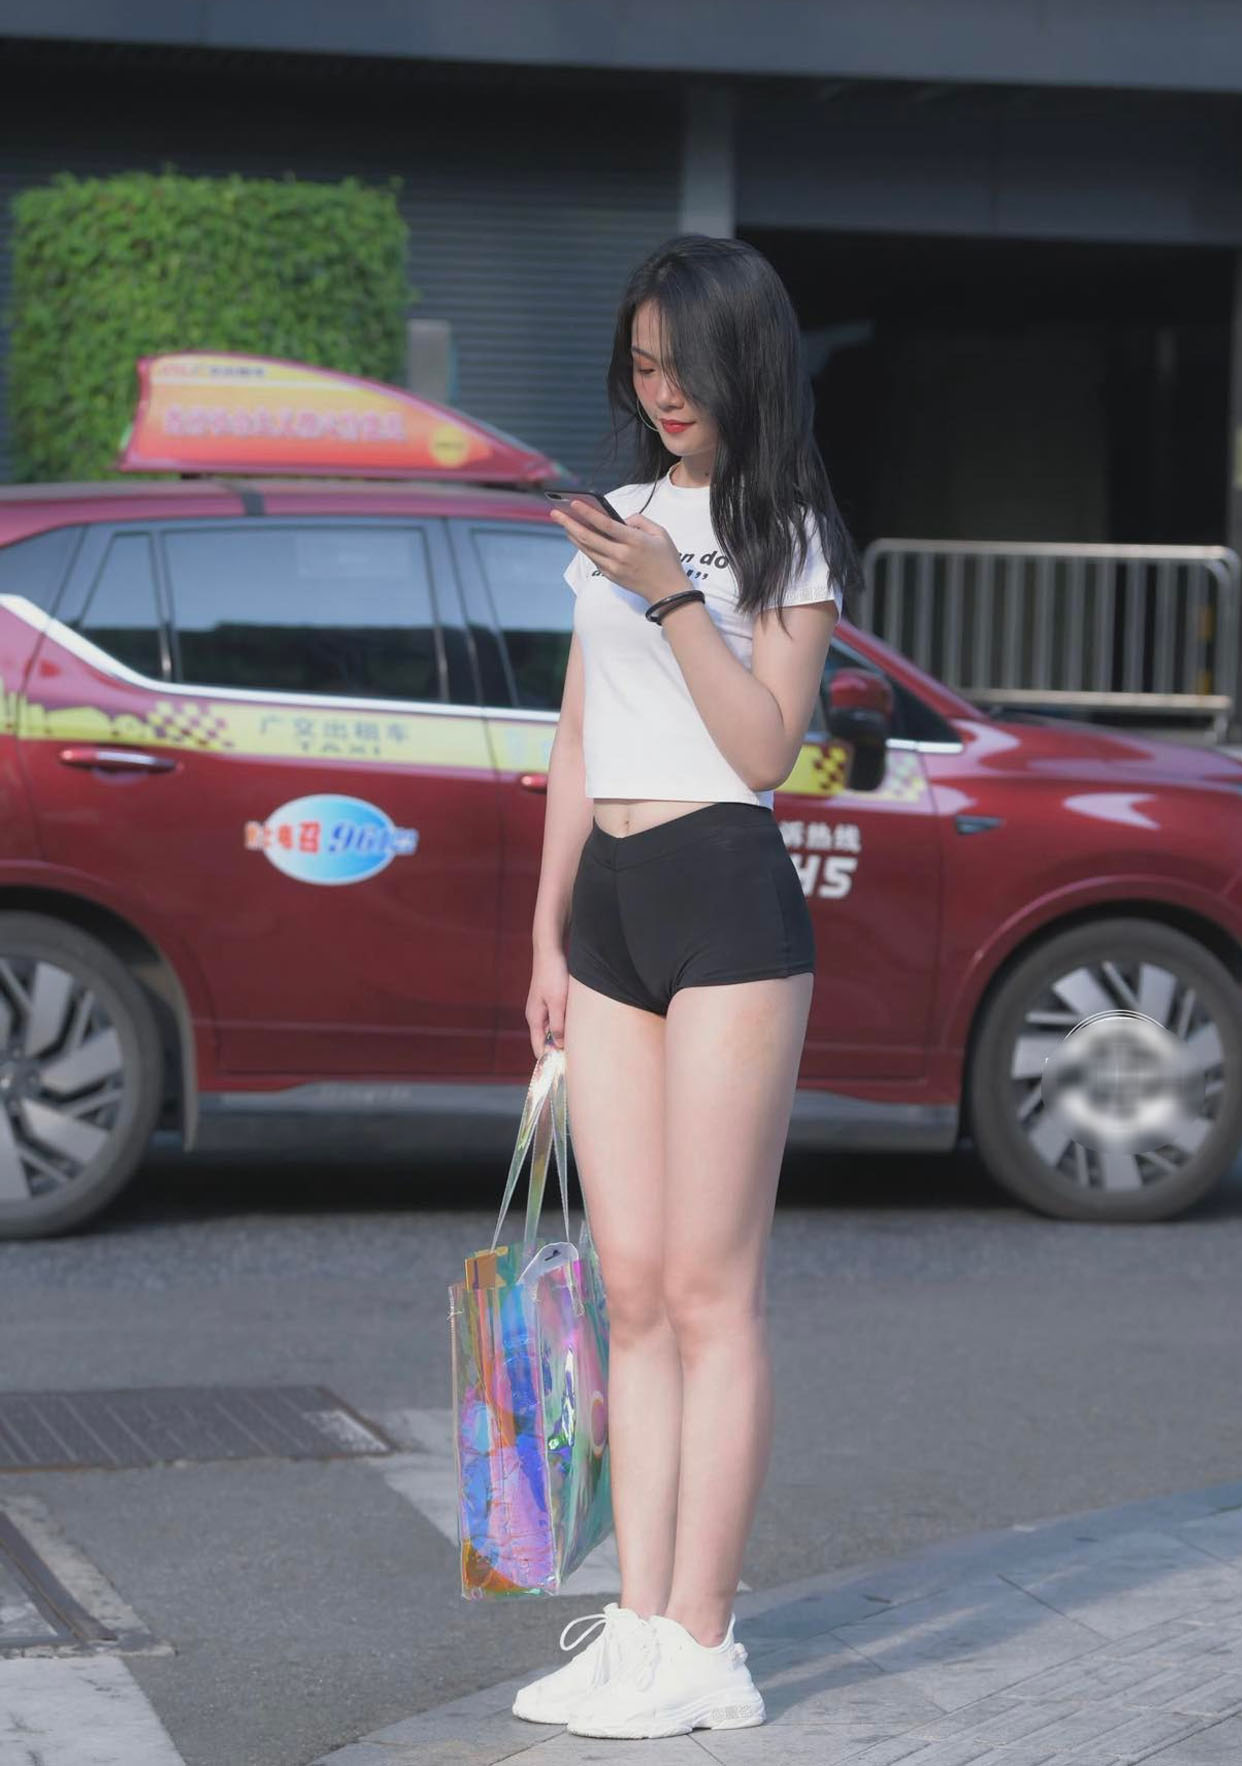 Nàng hot girl thu hút ánh nhìn vì mặc chiếc quần ngắn "tội lỗi" đi dạo phố - 3